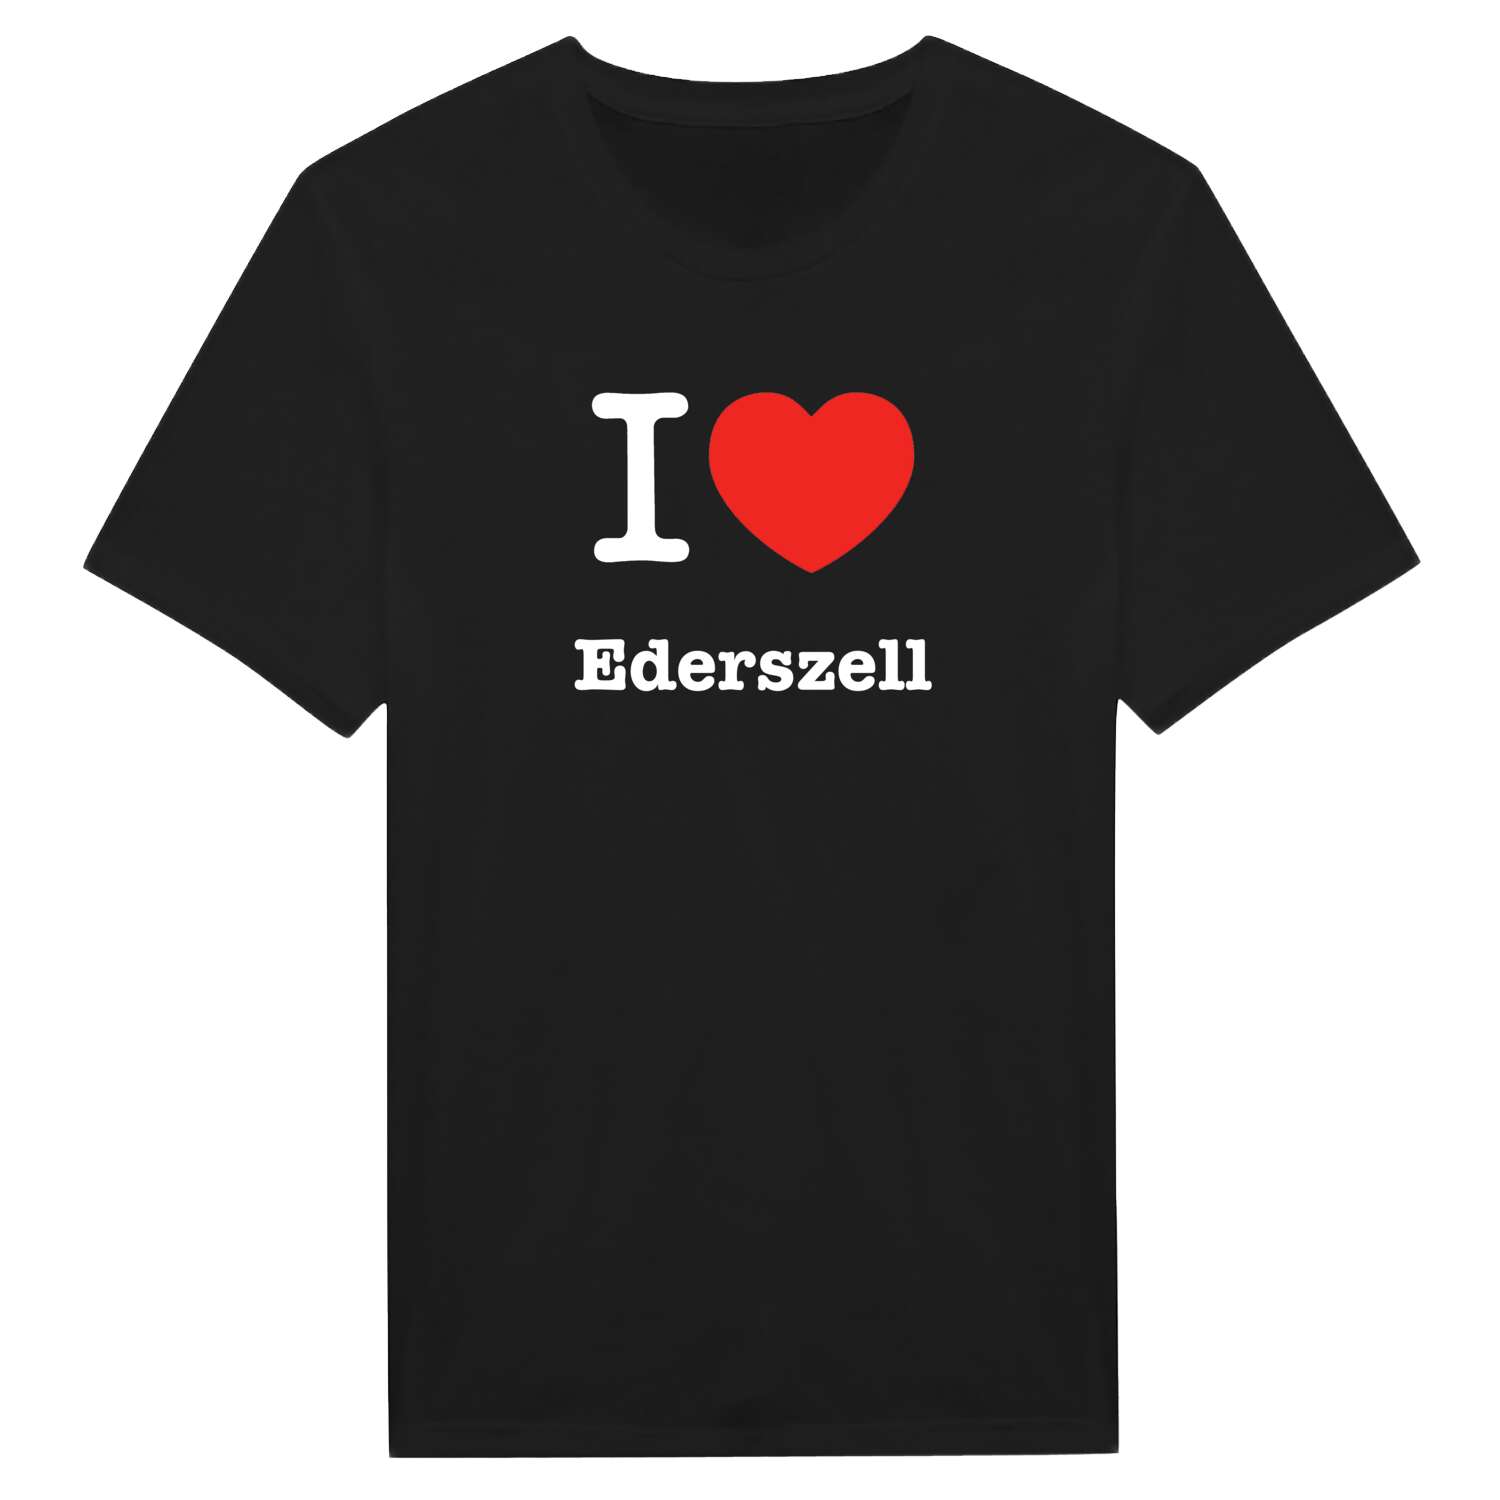 Ederszell T-Shirt »I love«